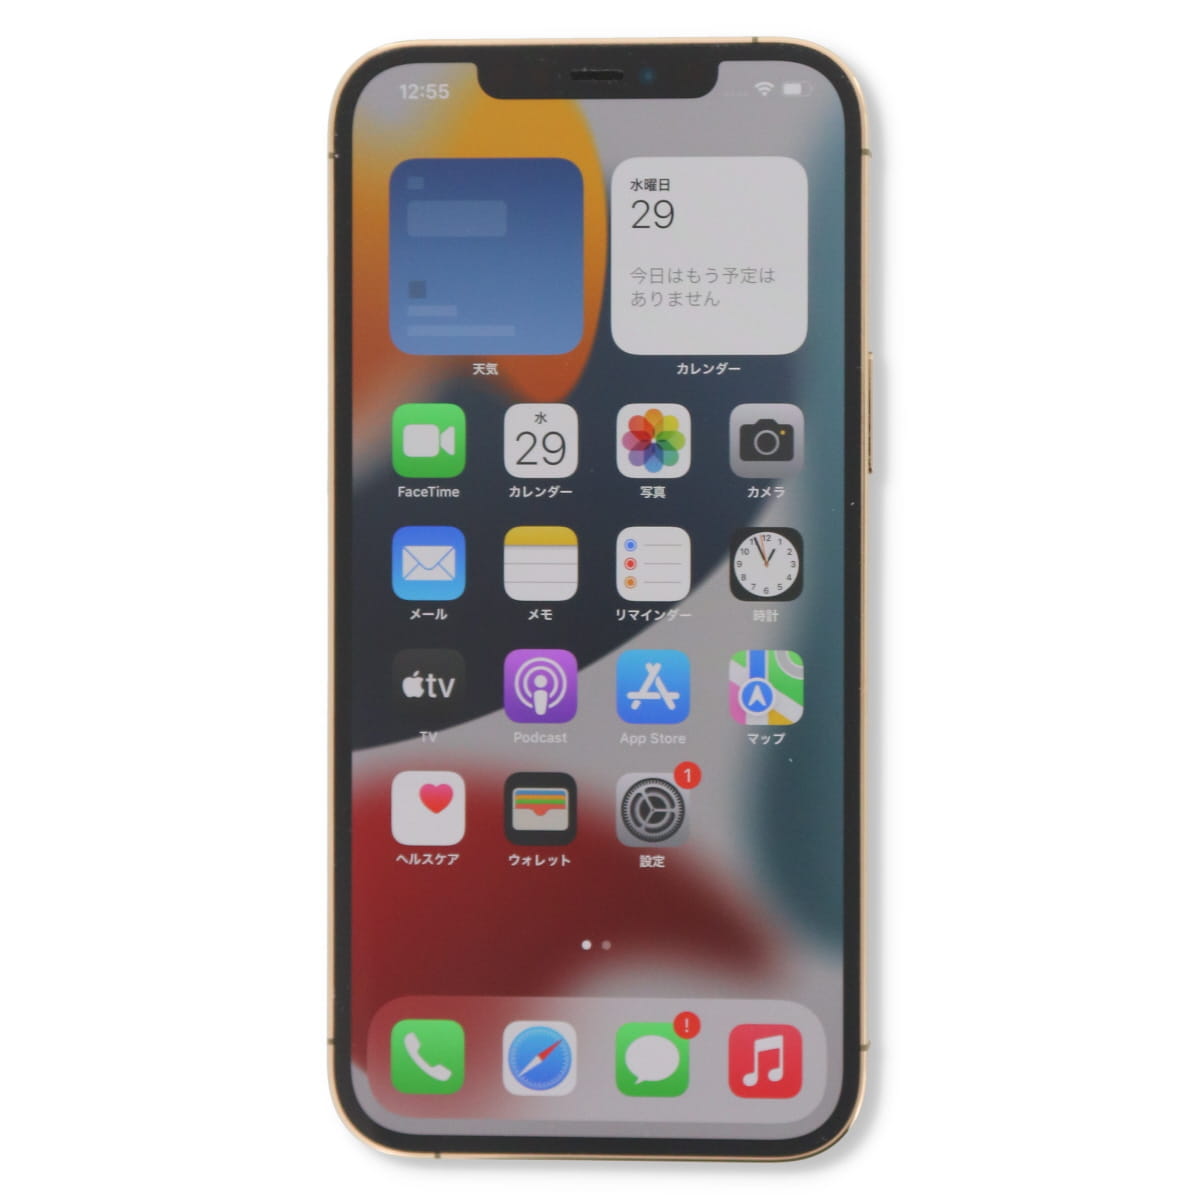 2021最新のスタイル iPhone 12 Pro Max 128GB - ゴールド - SIMフリー